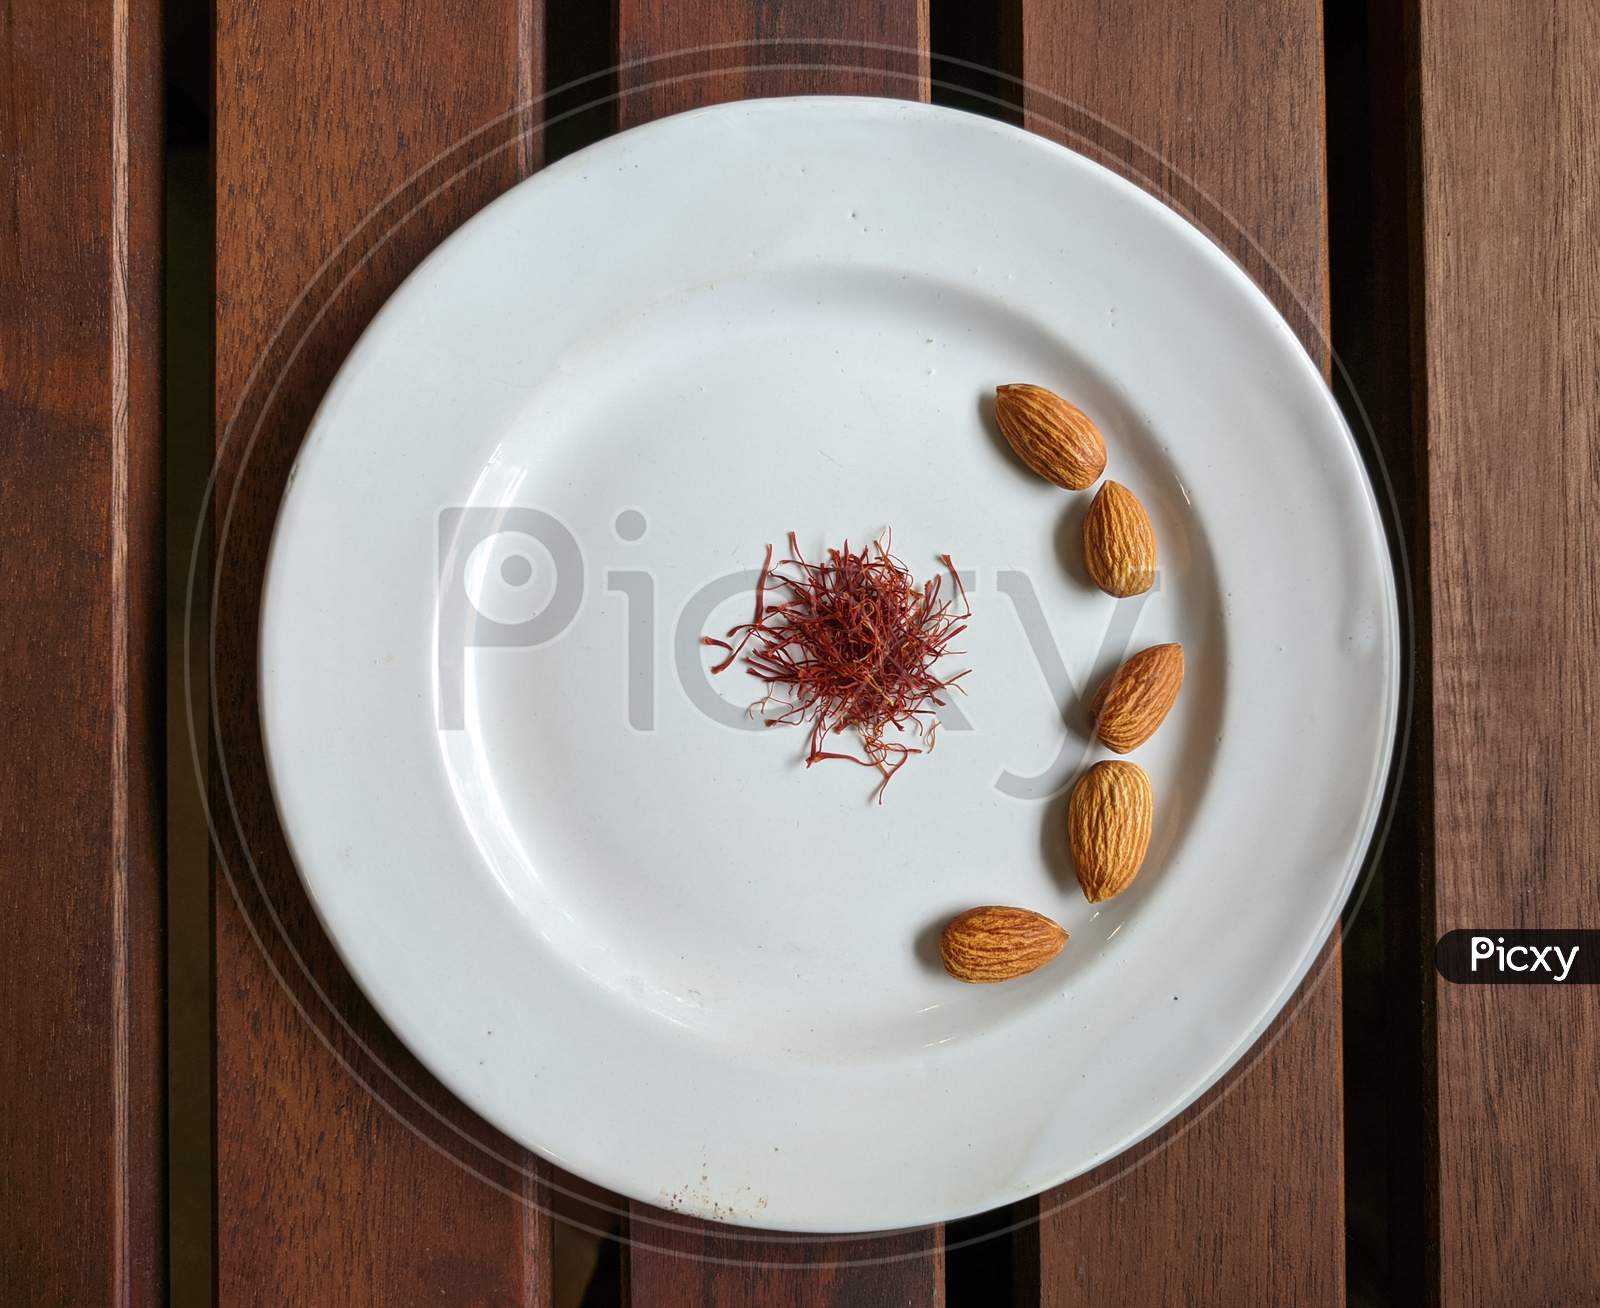 Saffron and almonds plate